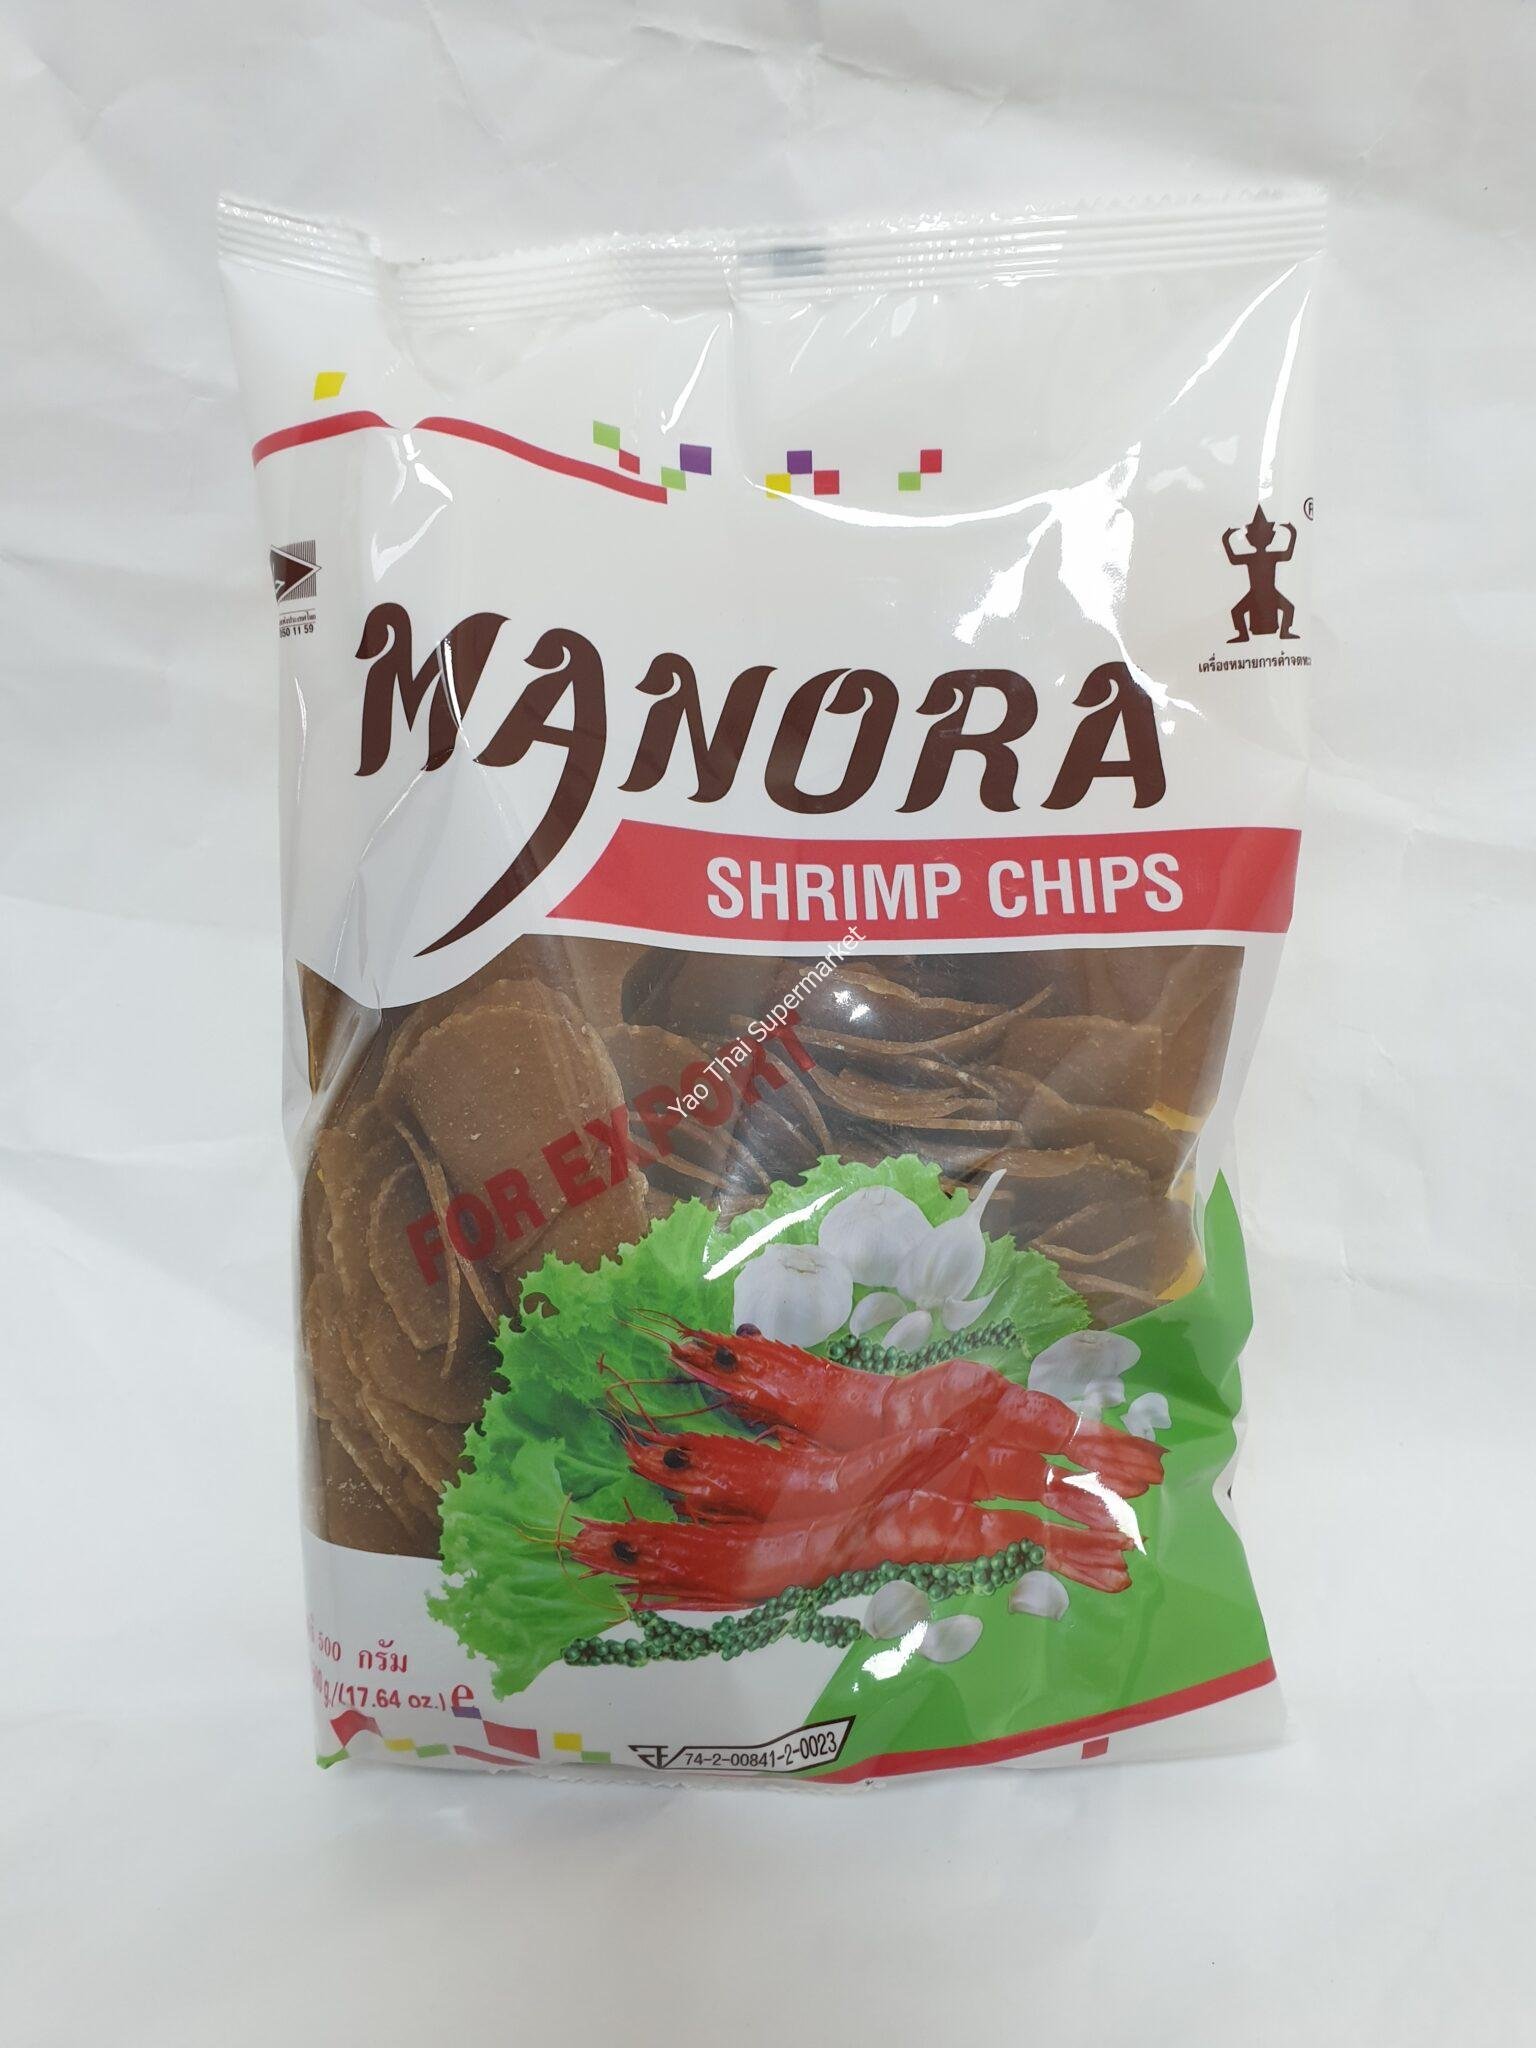 Manora Shrimp Chips 500g ข้าวเกรียบกุ้ง ตรามโนห์รา